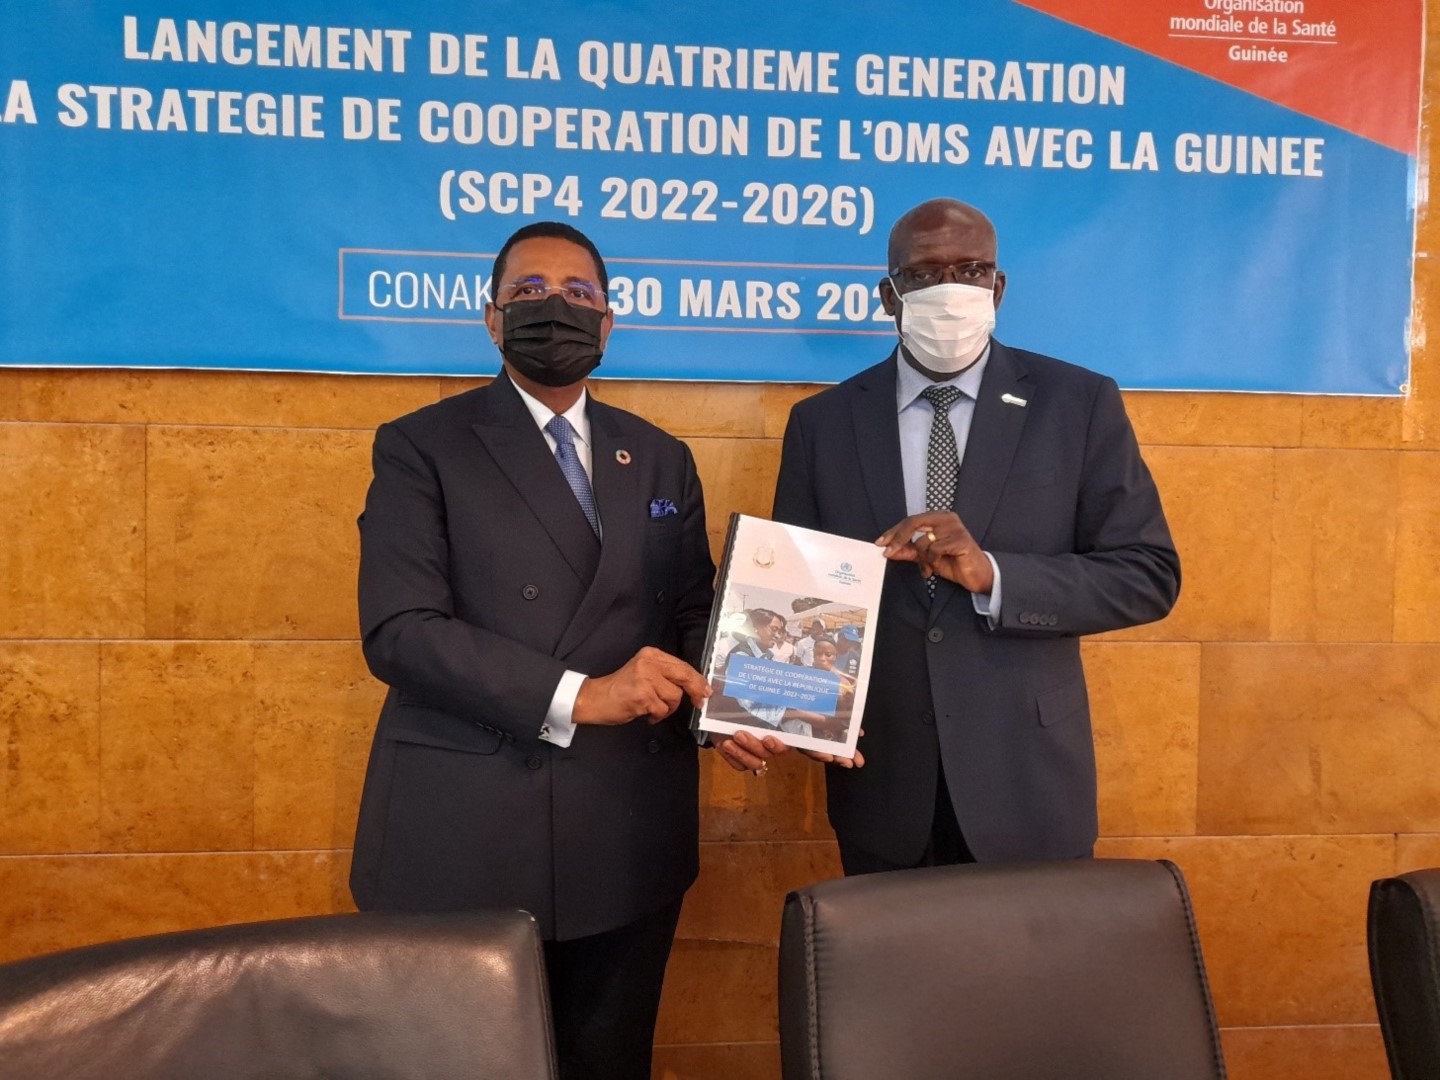 Le Ministre de la Santé et le Représentant de l’OMS présentant la nouvelle stratégie de coopération de l’OMS avec la Guinée